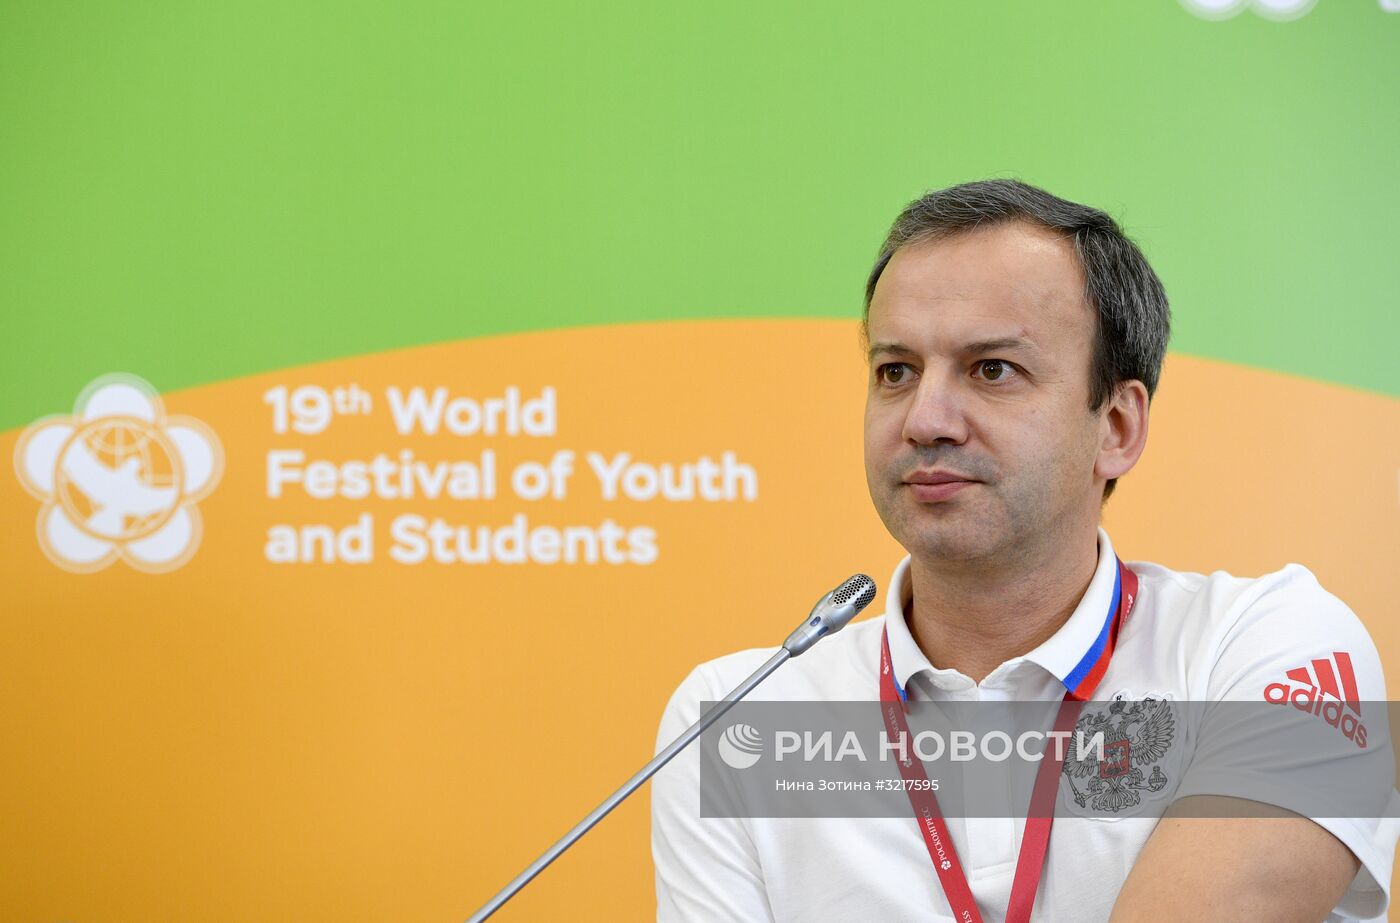 XIX Всемирный фестиваль молодежи и студентов. Дискуссионная программа